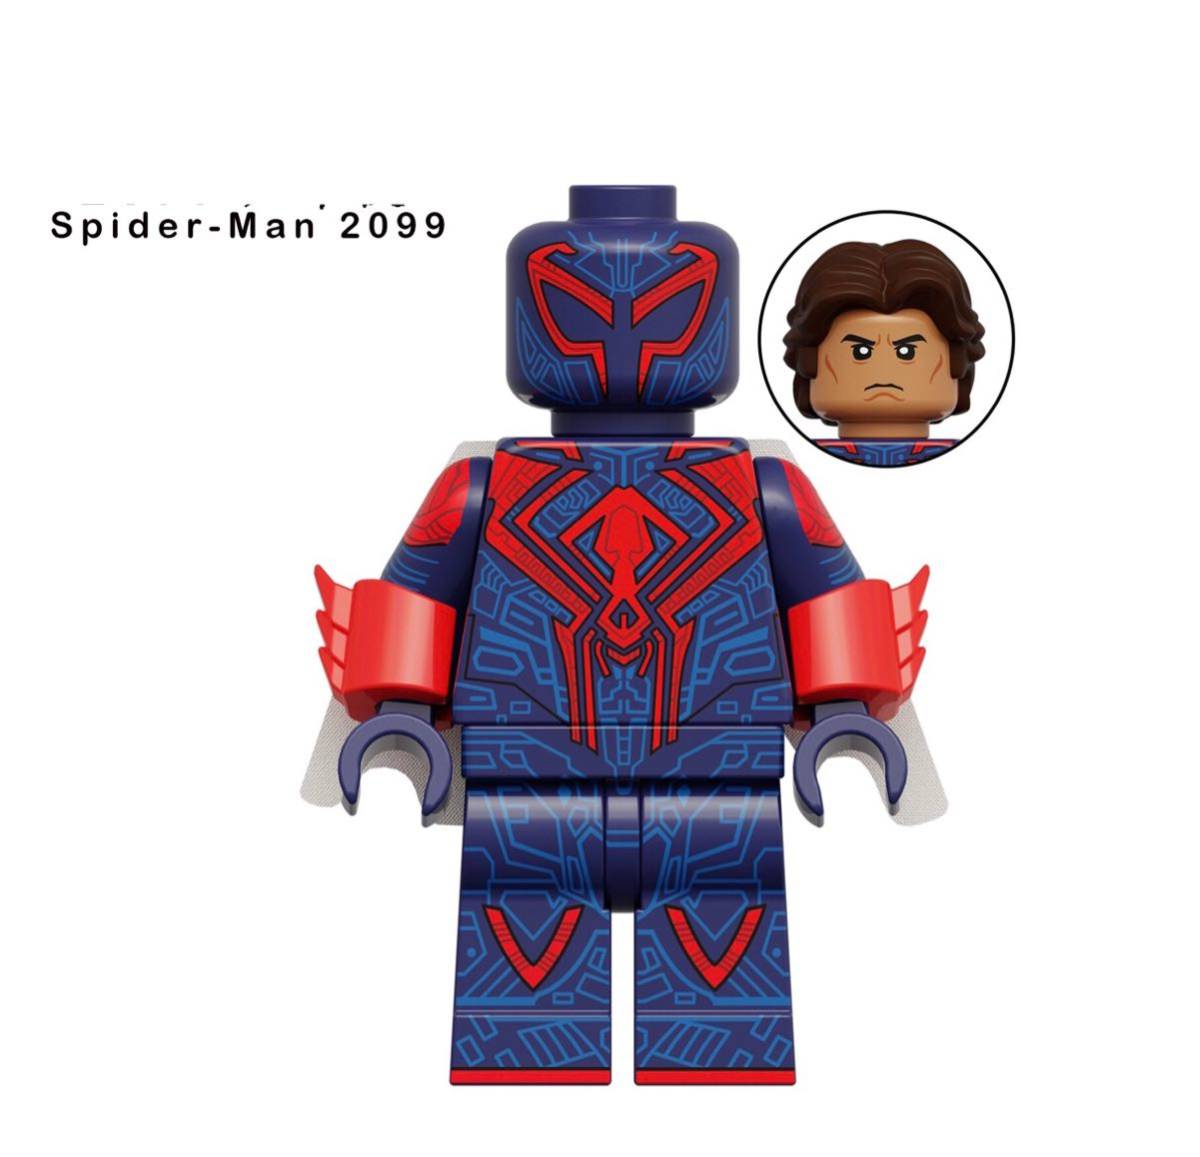 即納 1体 マーベル アベンジャーズ スパイダーマン ミニフィグ ブロック LEGO レゴ 互換 ミニフィギュア enの画像1